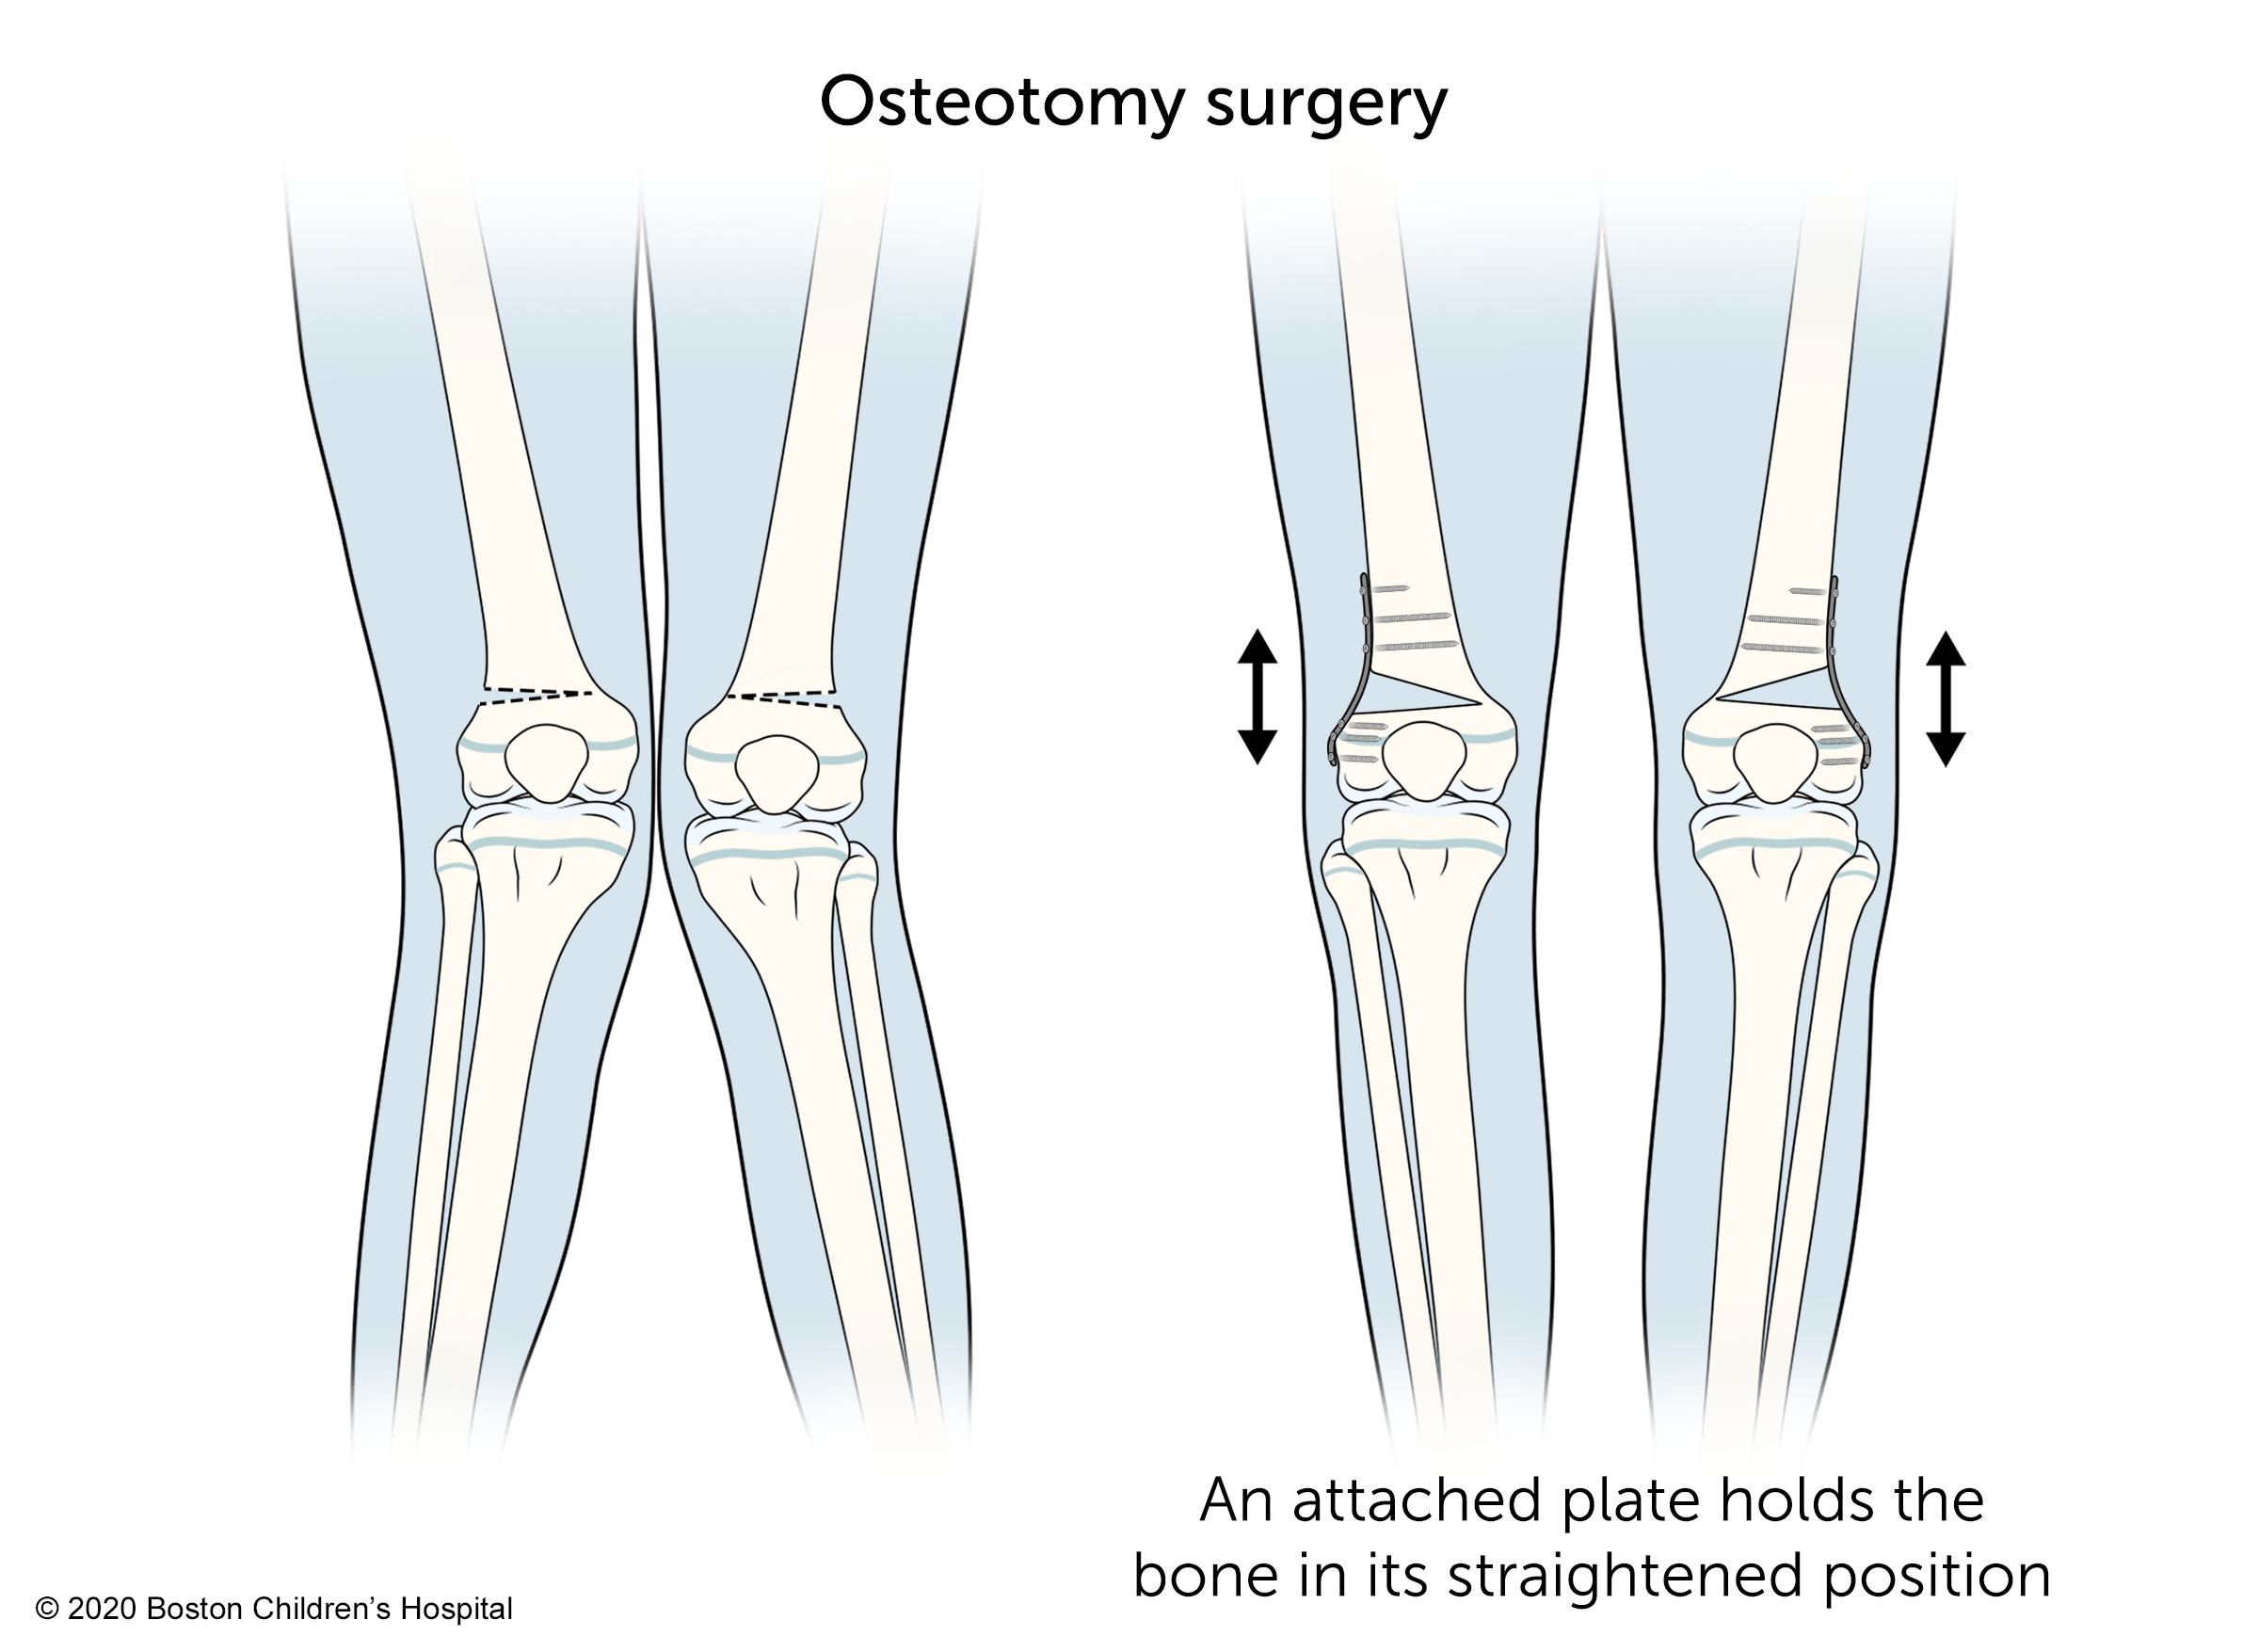 在截骨手术中，附着的钢板将骨头固定在其伸直的位置。